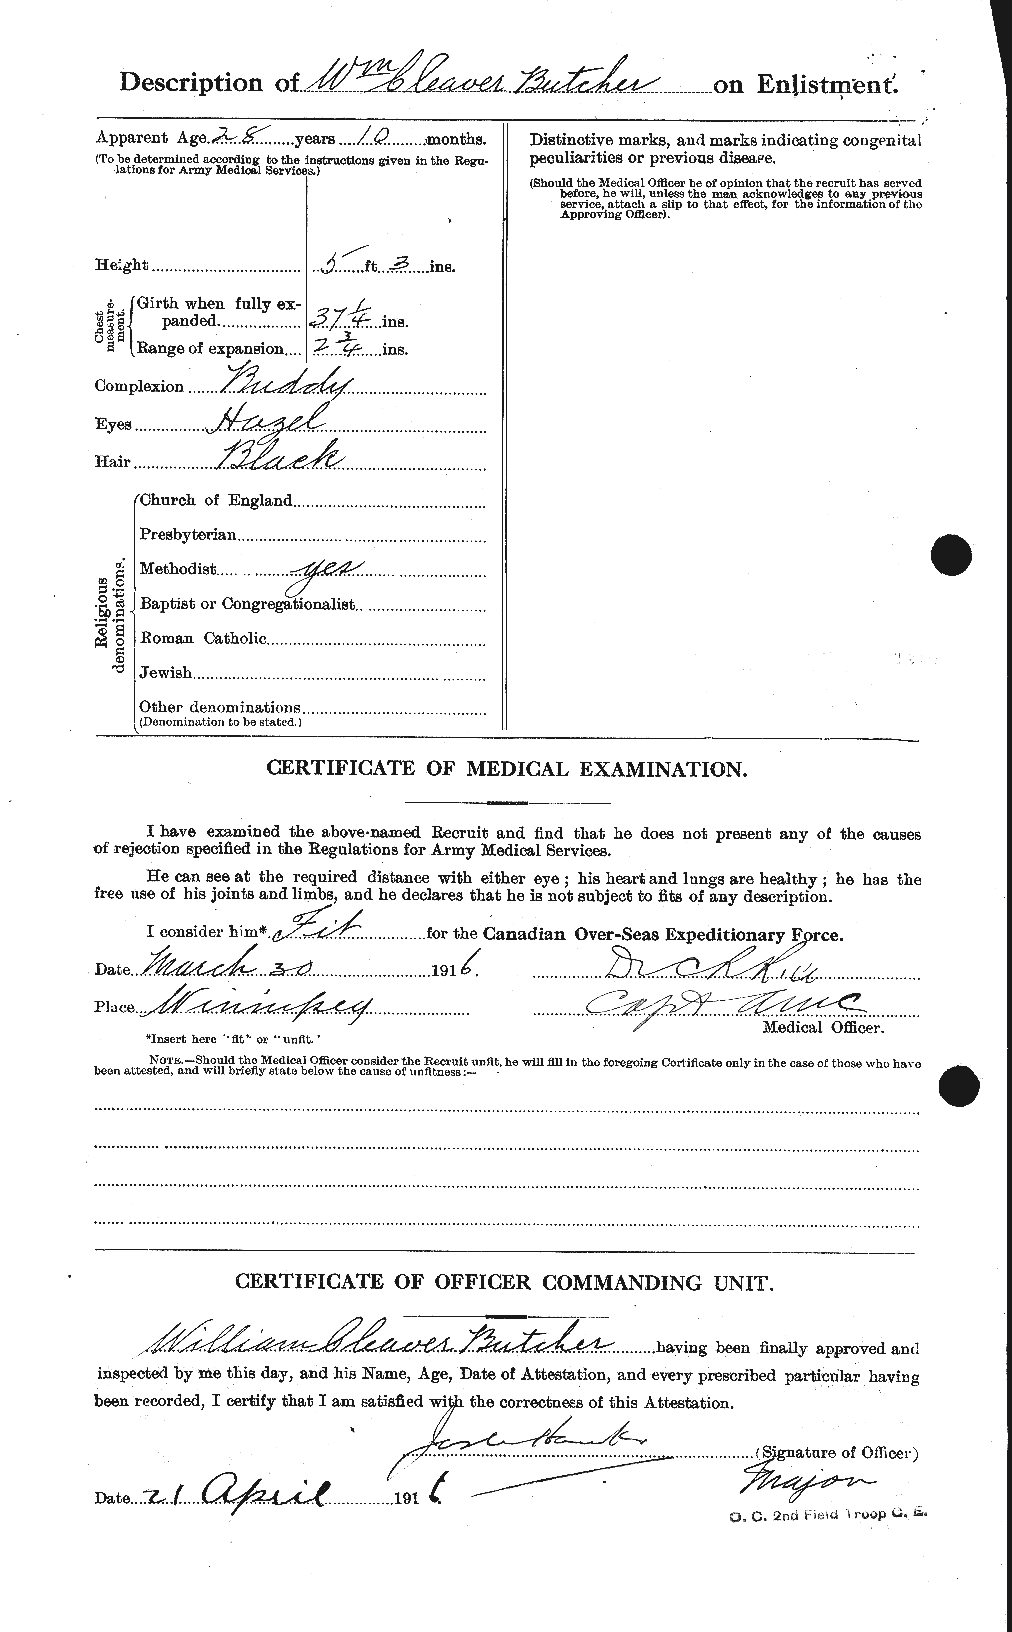 Dossiers du Personnel de la Première Guerre mondiale - CEC 273581b